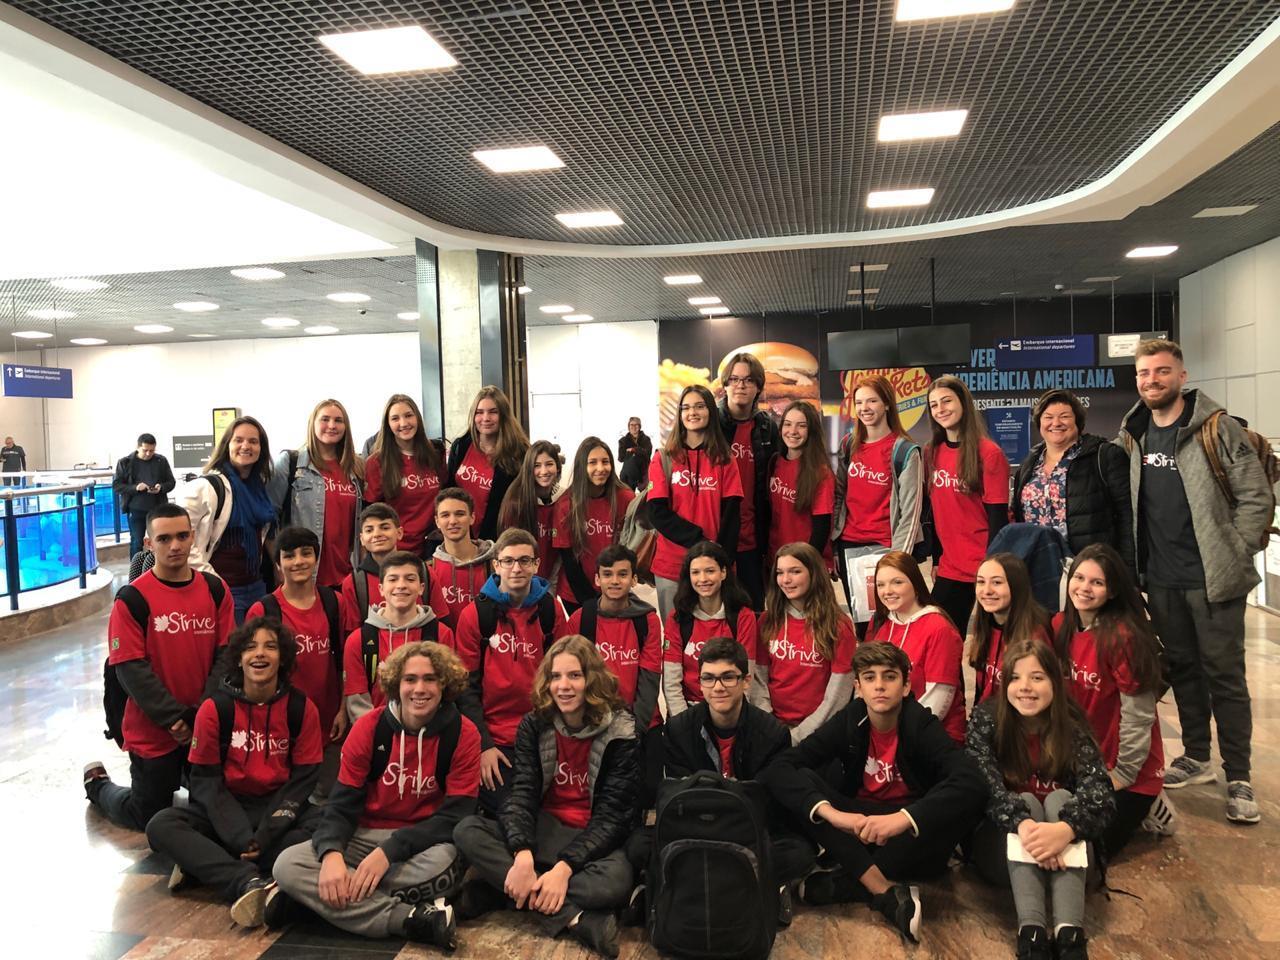 Estudantes bilíngues embarcam para Intercâmbio no Canadá